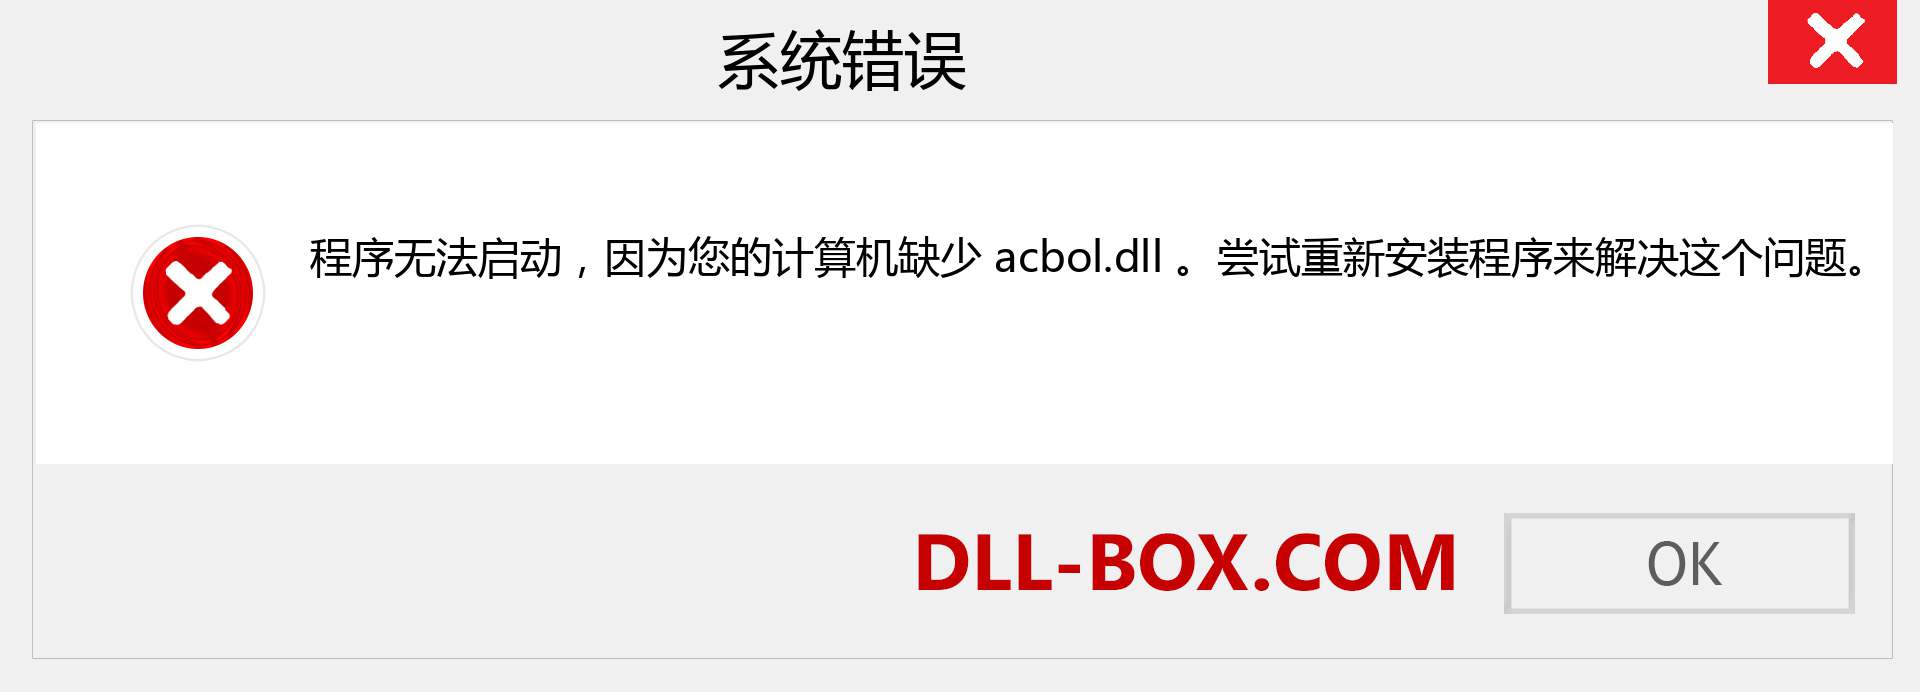 acbol.dll 文件丢失？。 适用于 Windows 7、8、10 的下载 - 修复 Windows、照片、图像上的 acbol dll 丢失错误